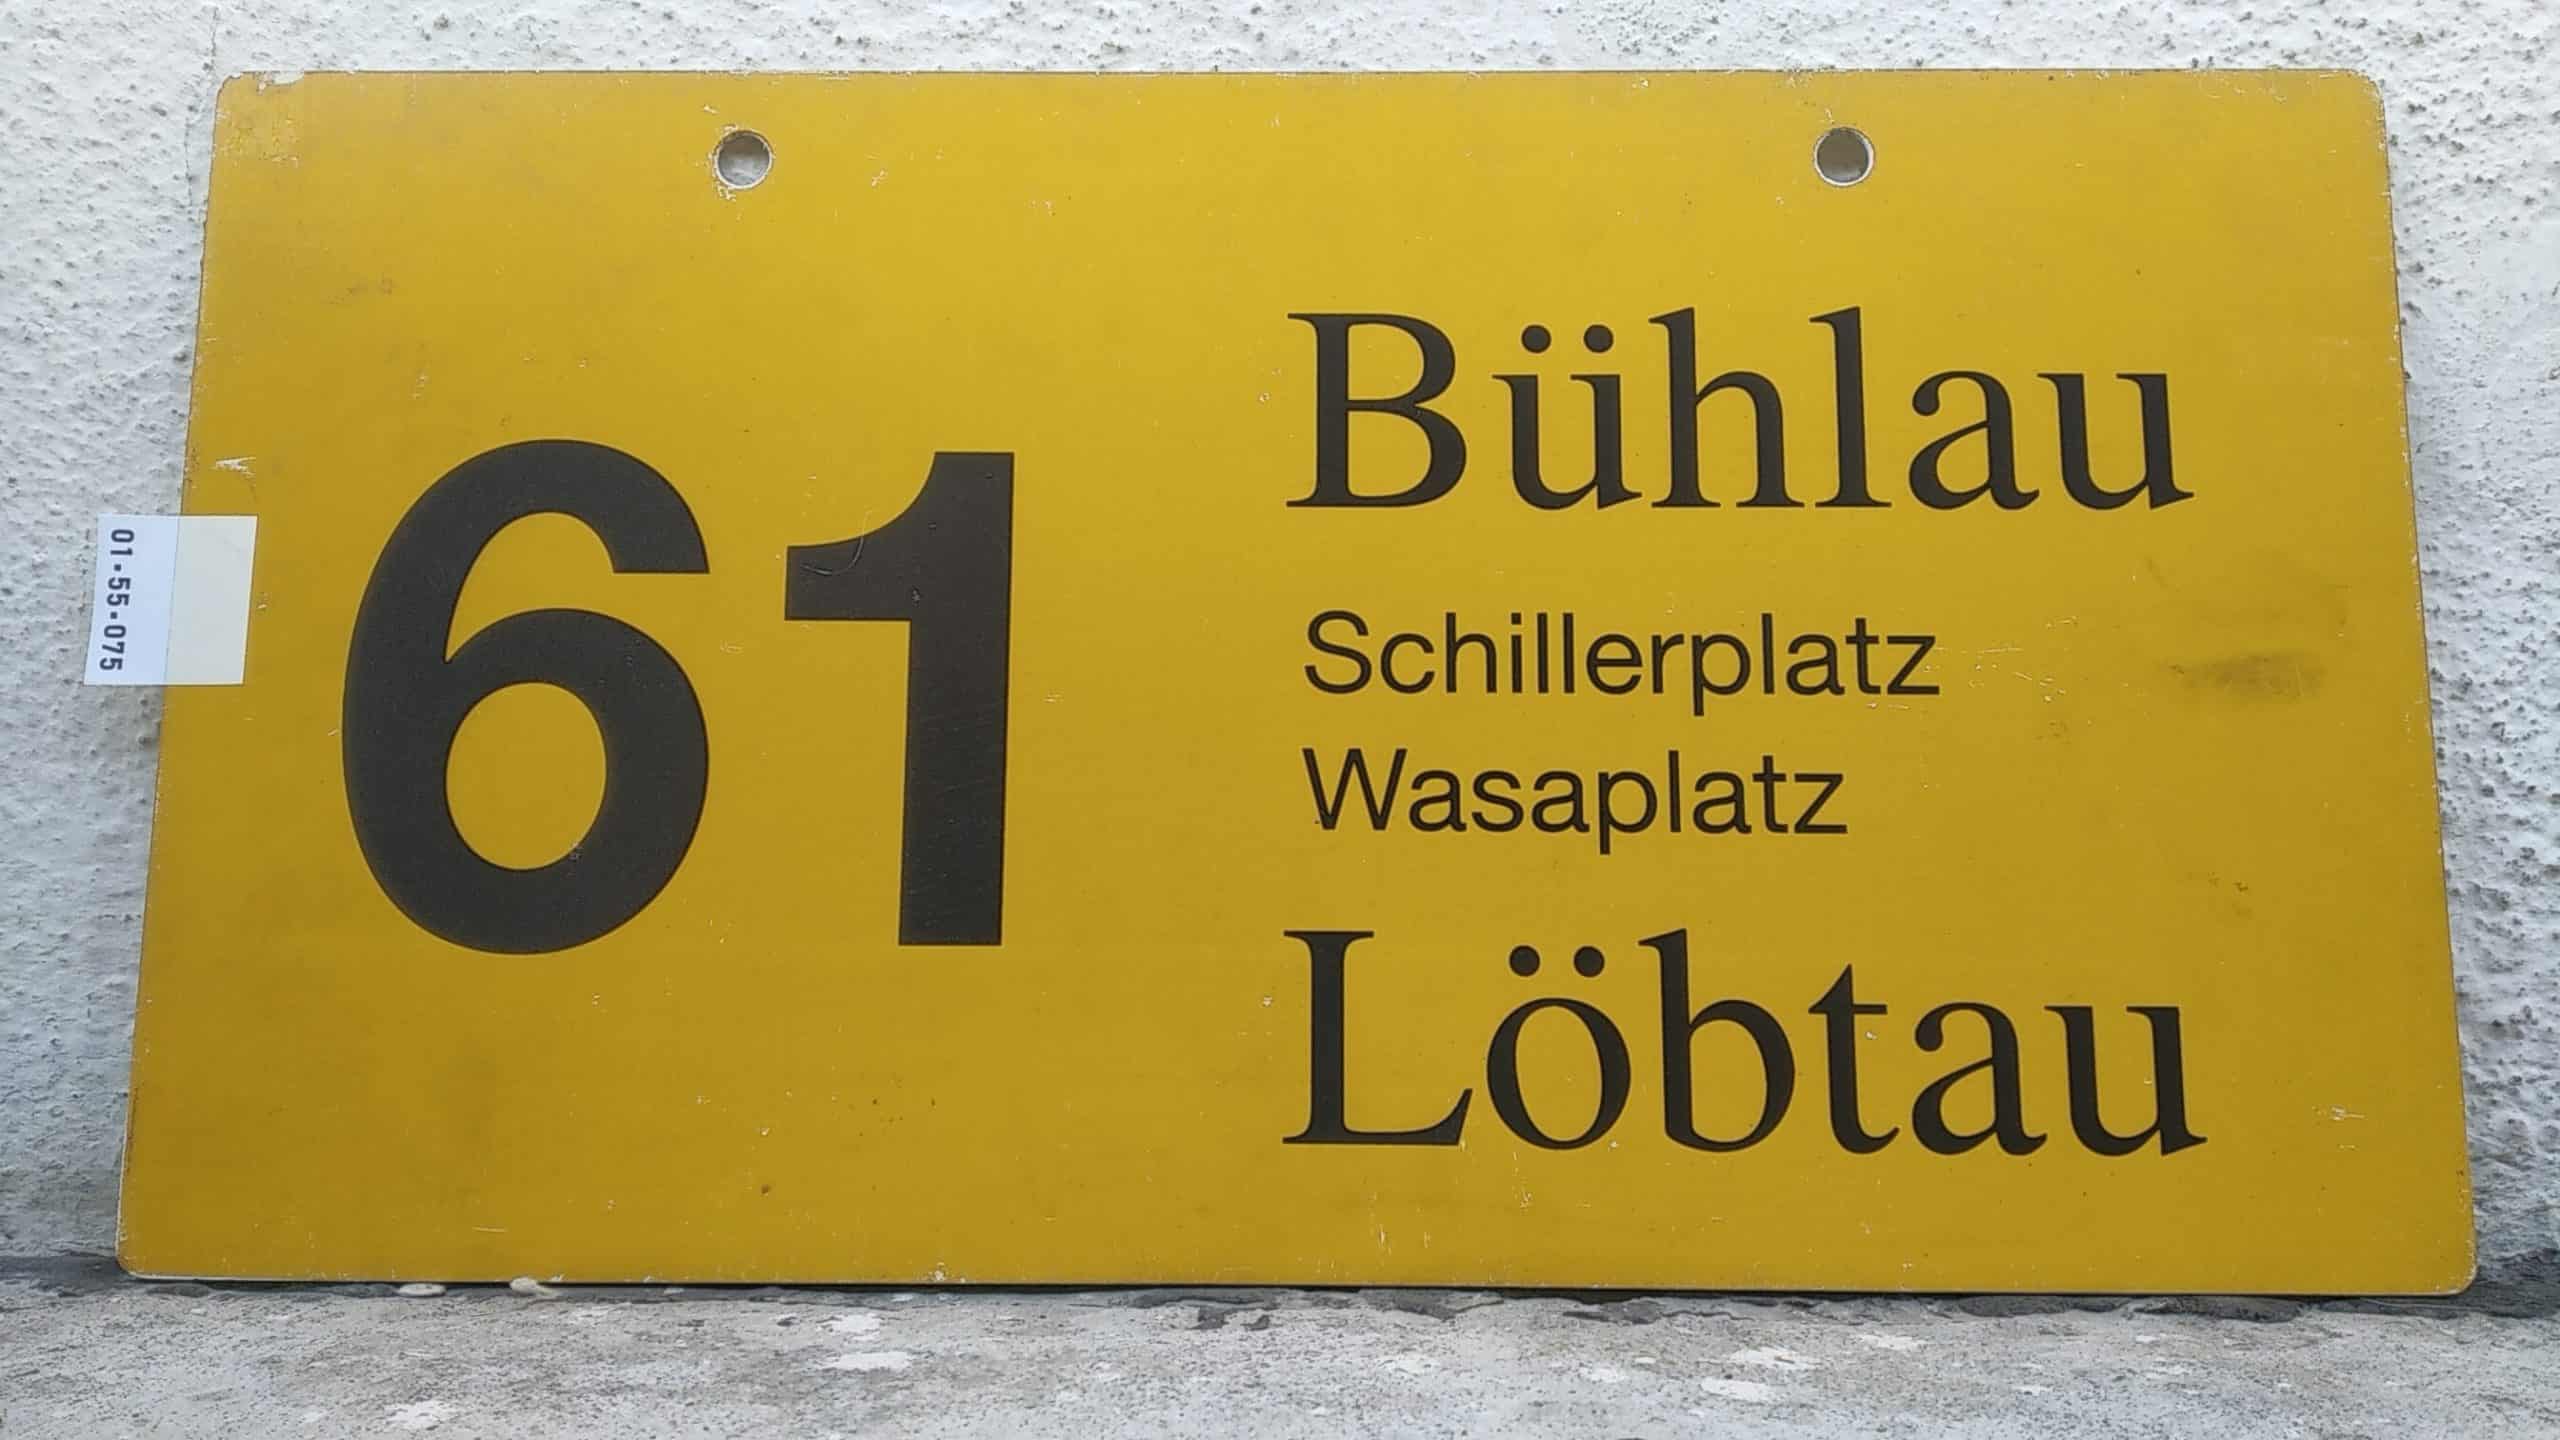 Ein seltenes Bus-Linienschild aus Dresden der Linie 61 von Bühlau nach Löbtau #1